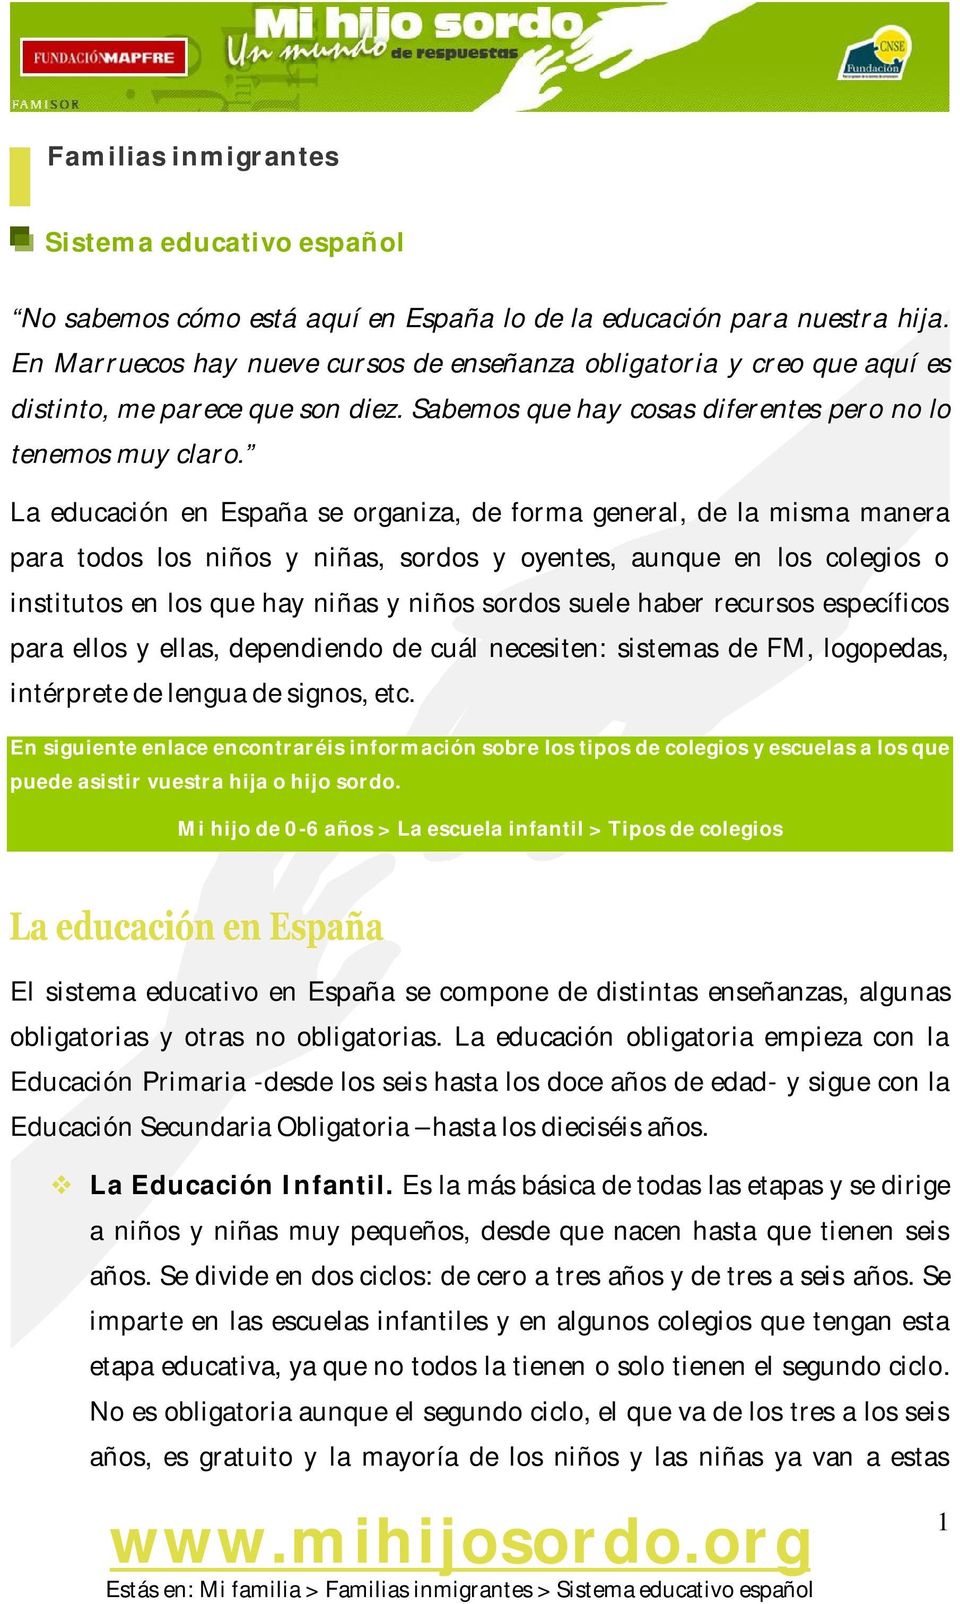 La educación en España se organiza, de forma general, de la misma manera para todos los niños y niñas, sordos y oyentes, aunque en los colegios o institutos en los que hay niñas y niños sordos suele